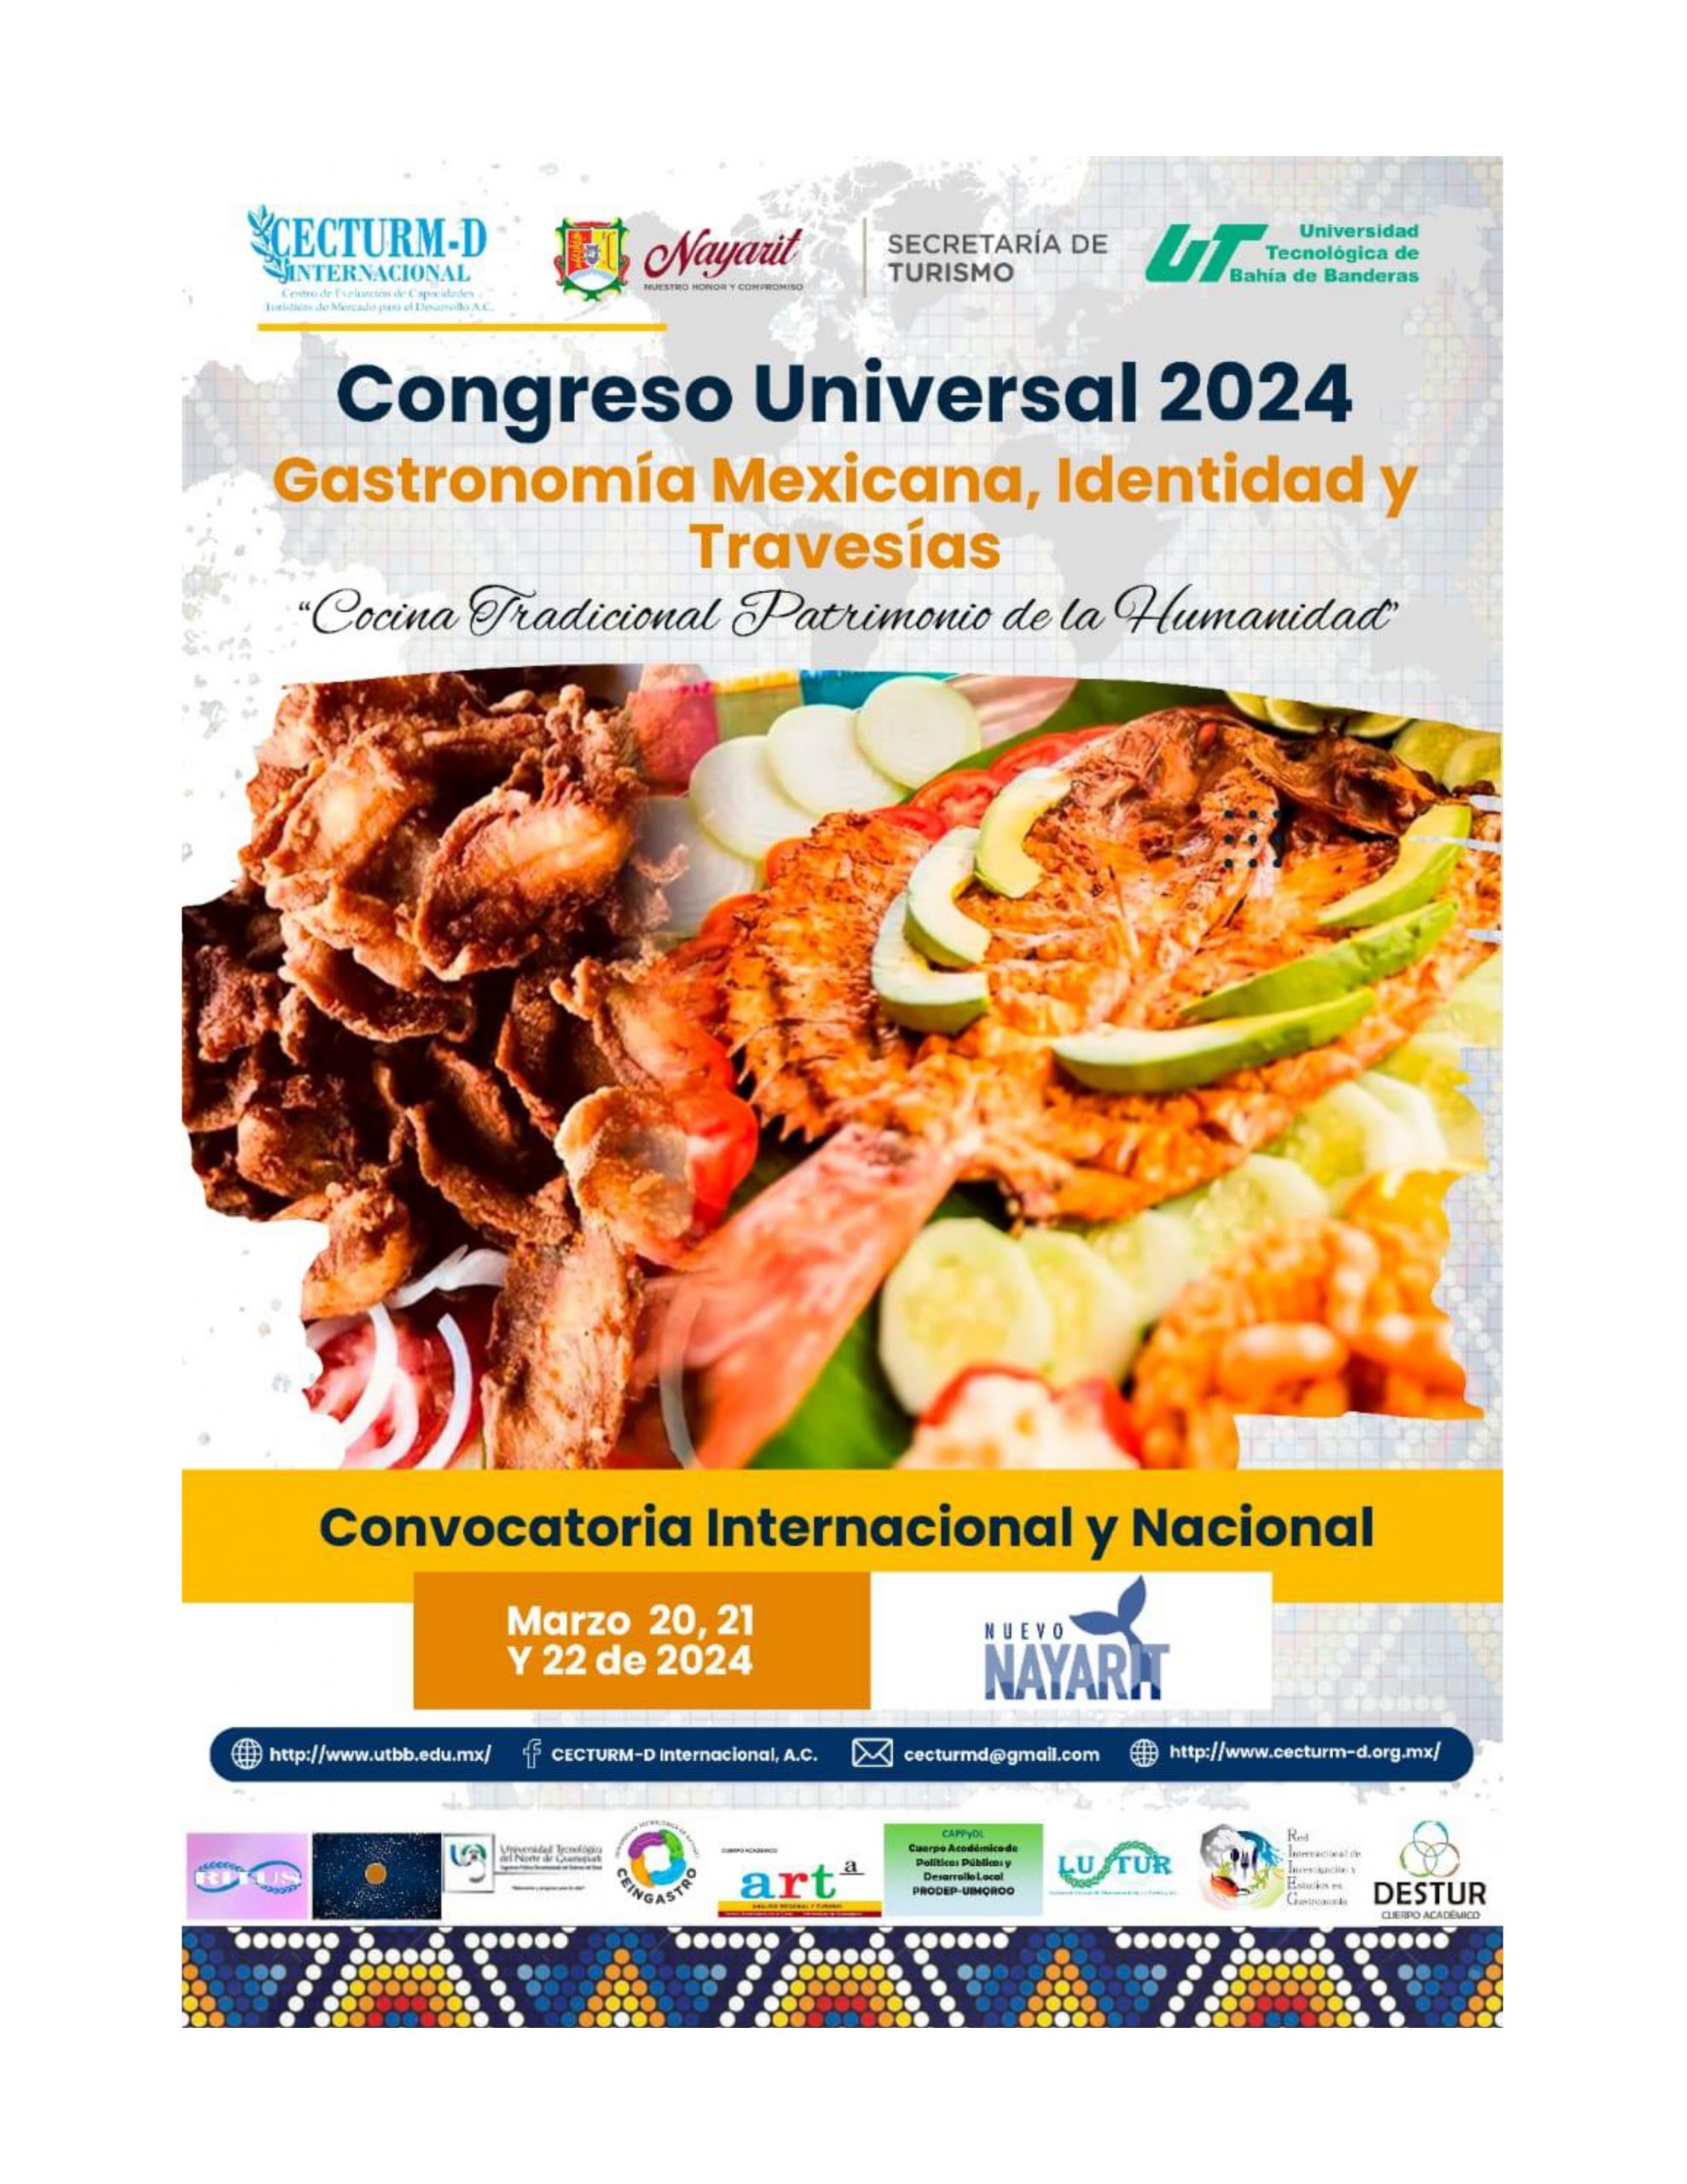 Congreso Universal 2024: Gastronomía Mexicana, Identidad y Travesías. Cocina Tradicional Patrimonio de la Humanidad.